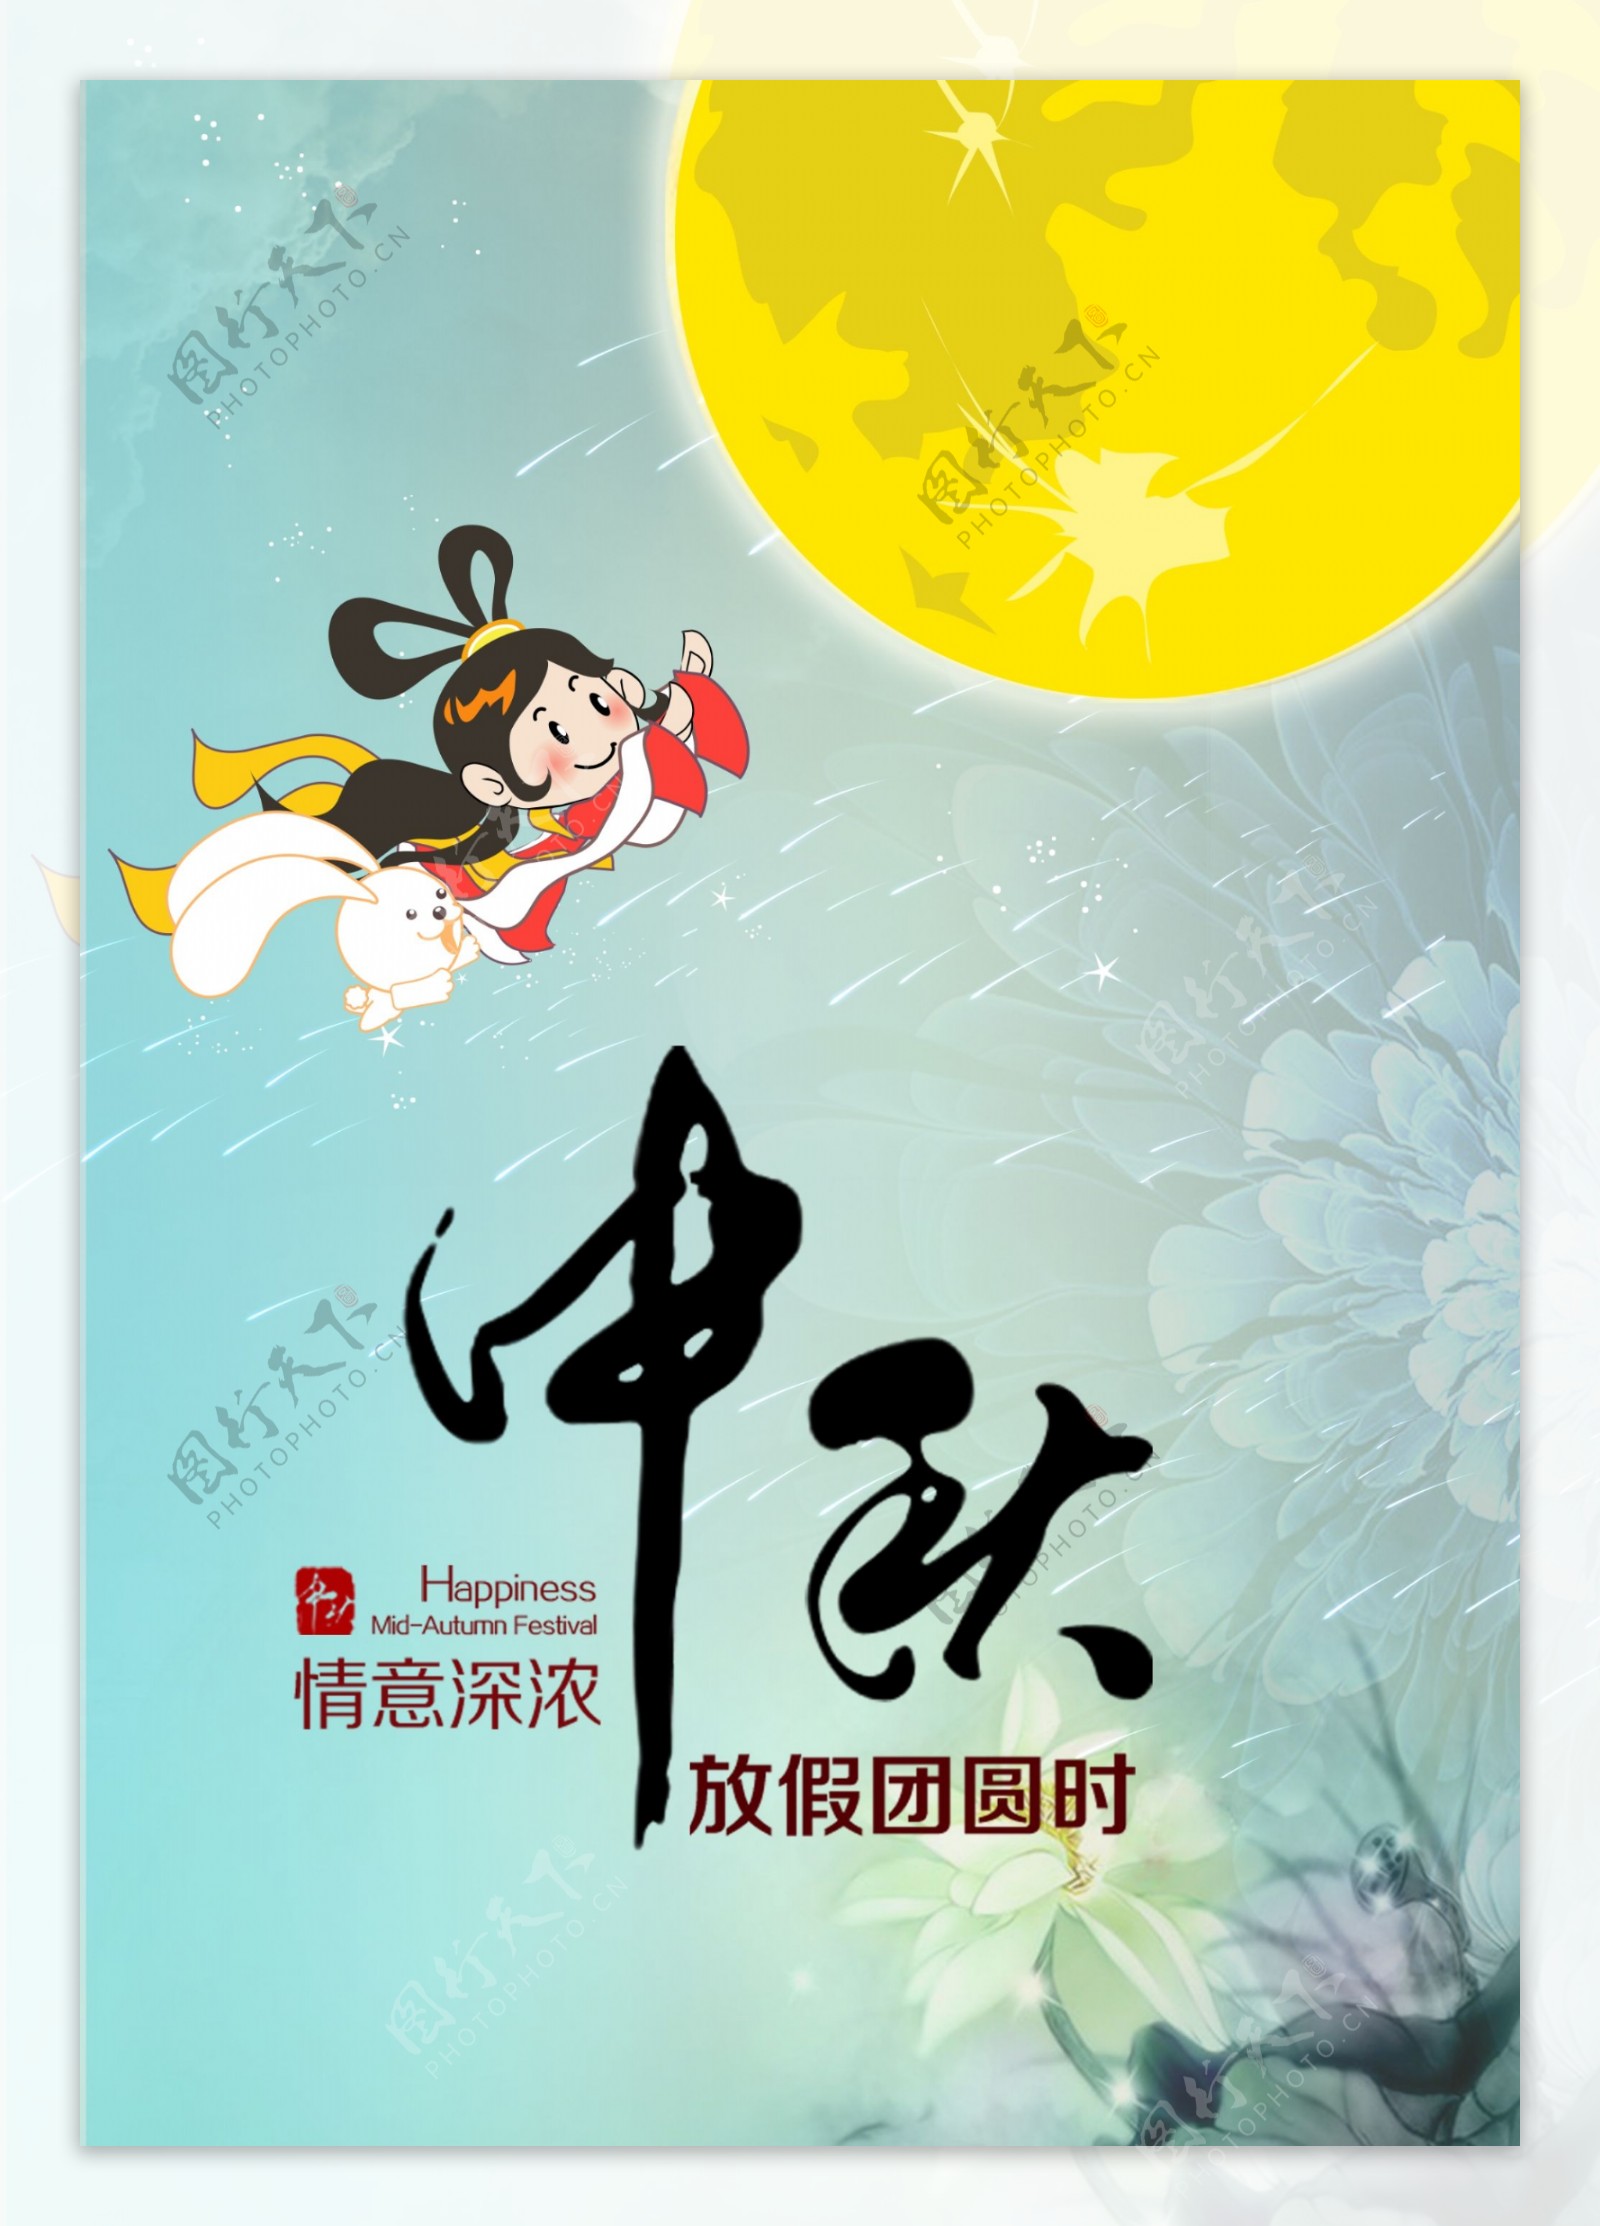 中秋节团圆海报设计